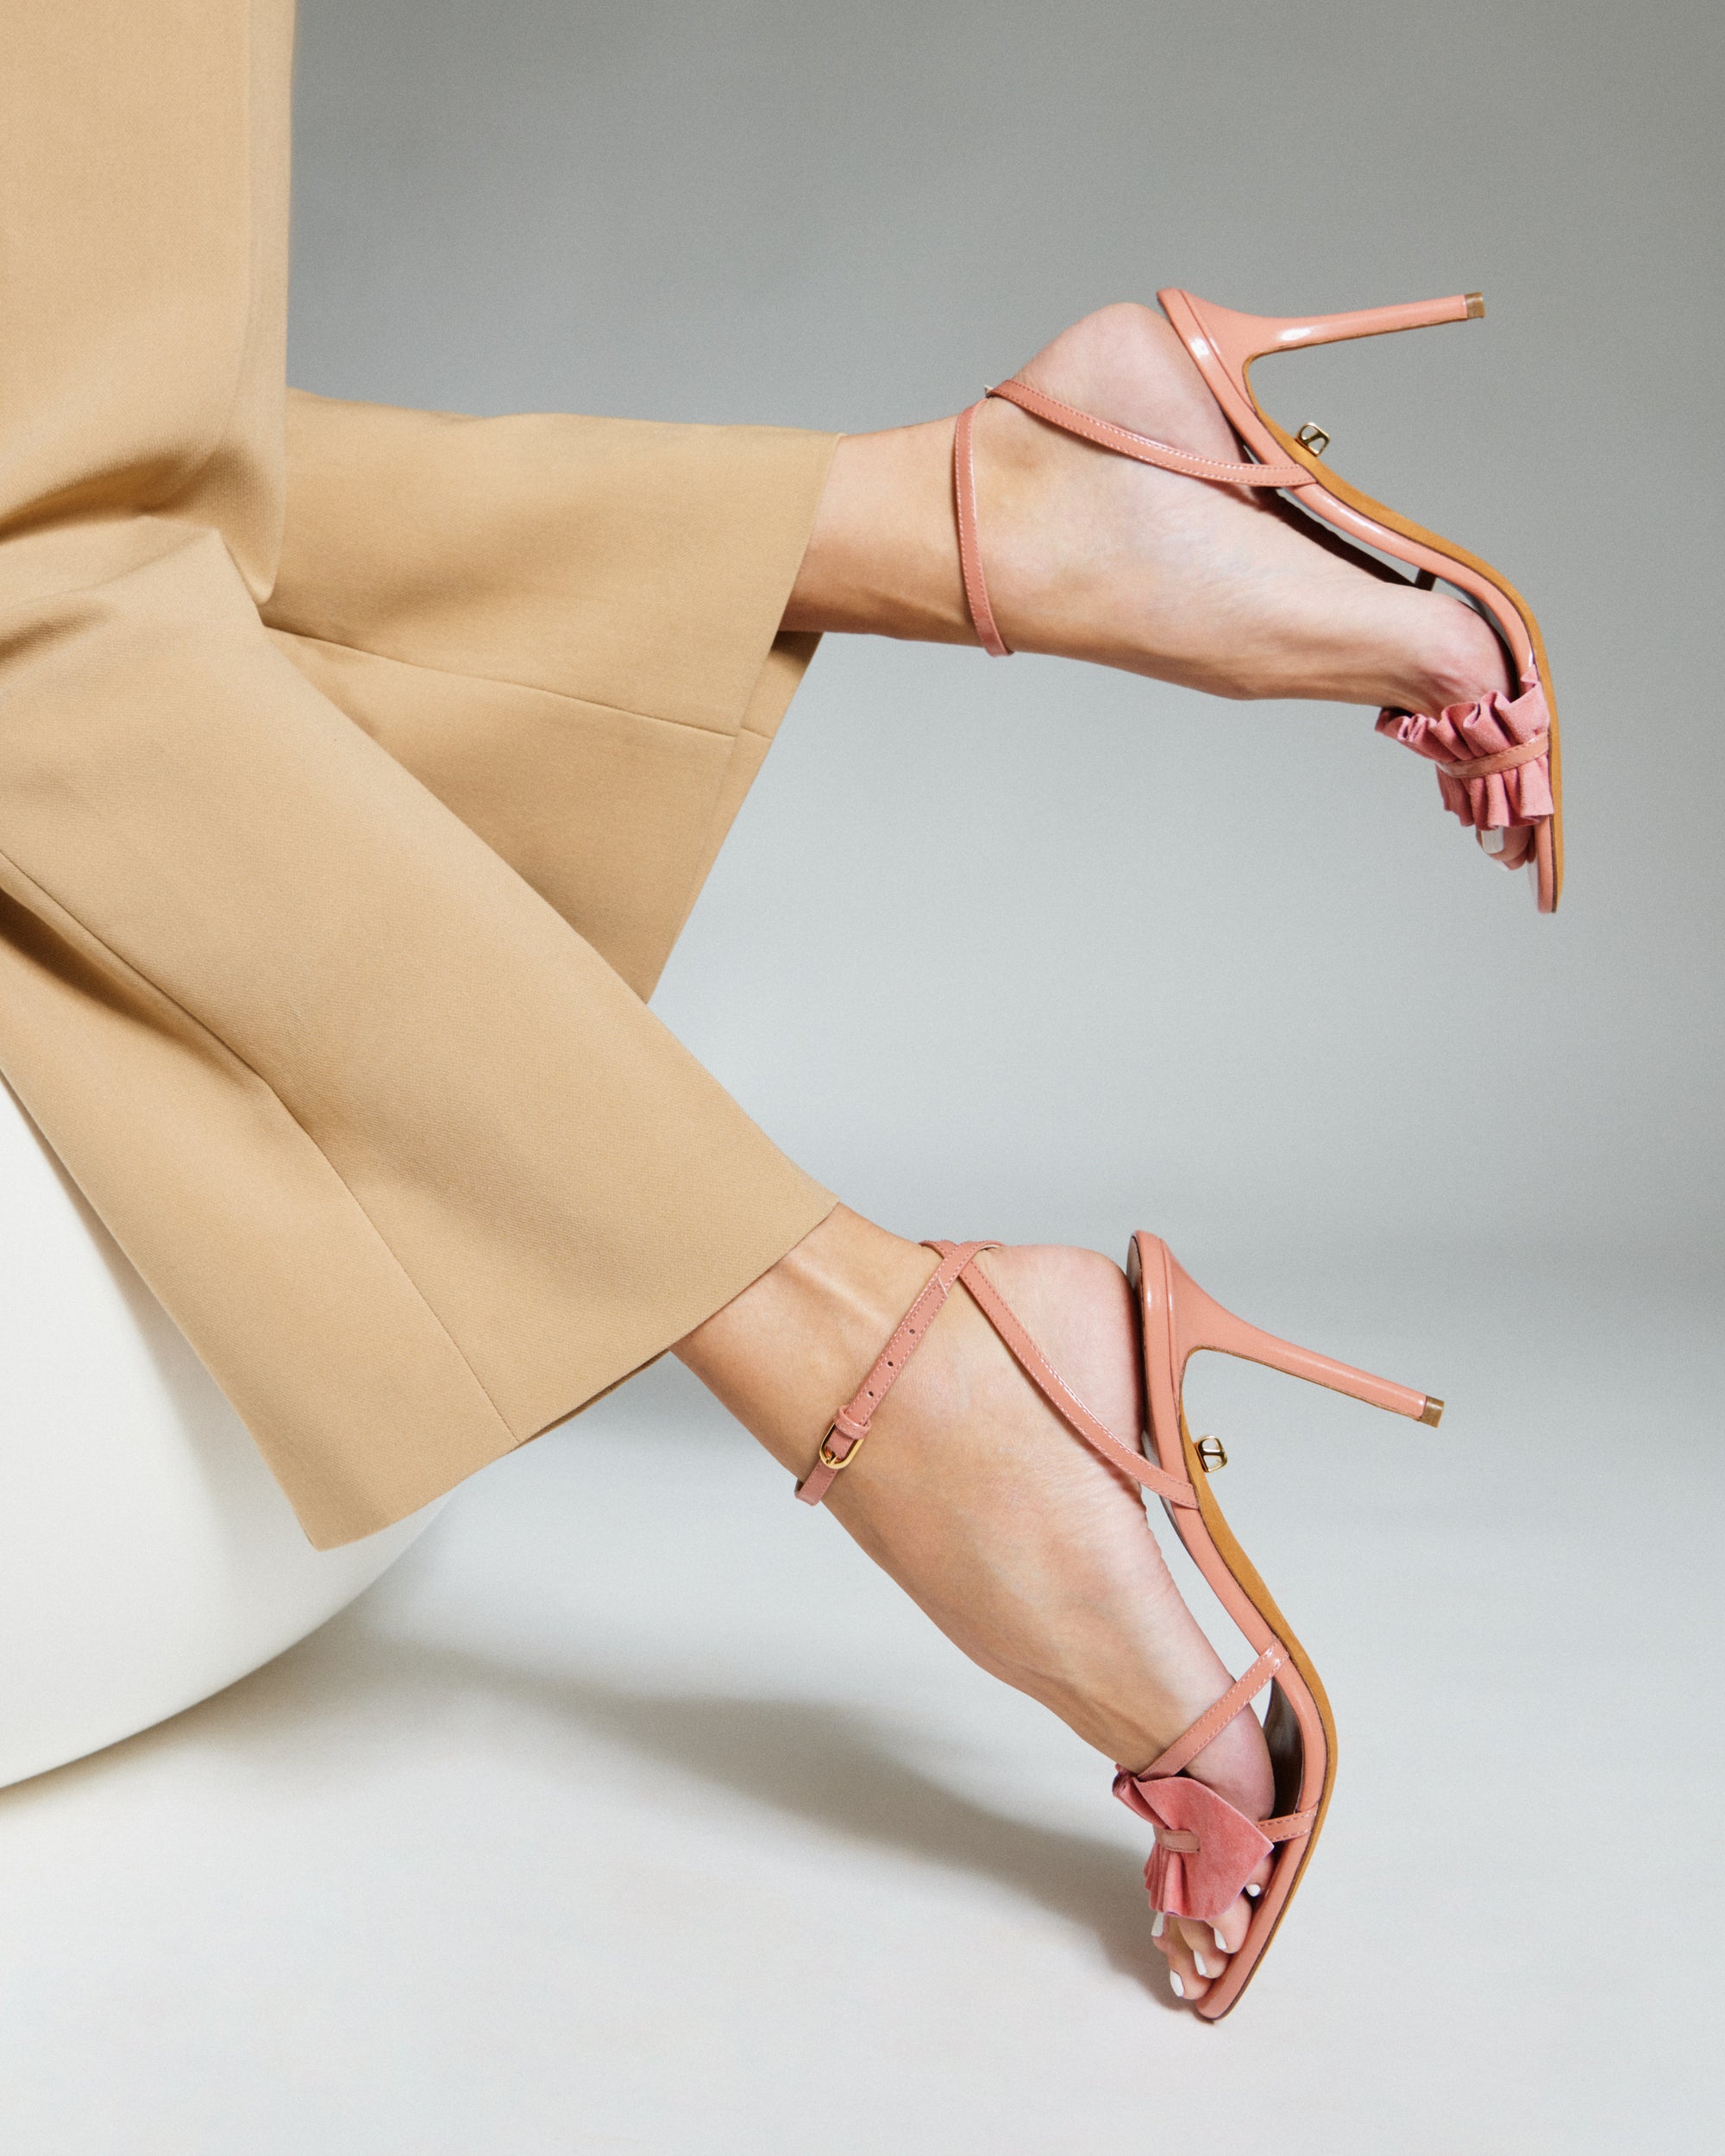 Almudena 90 heeled sandals in suede - Rose